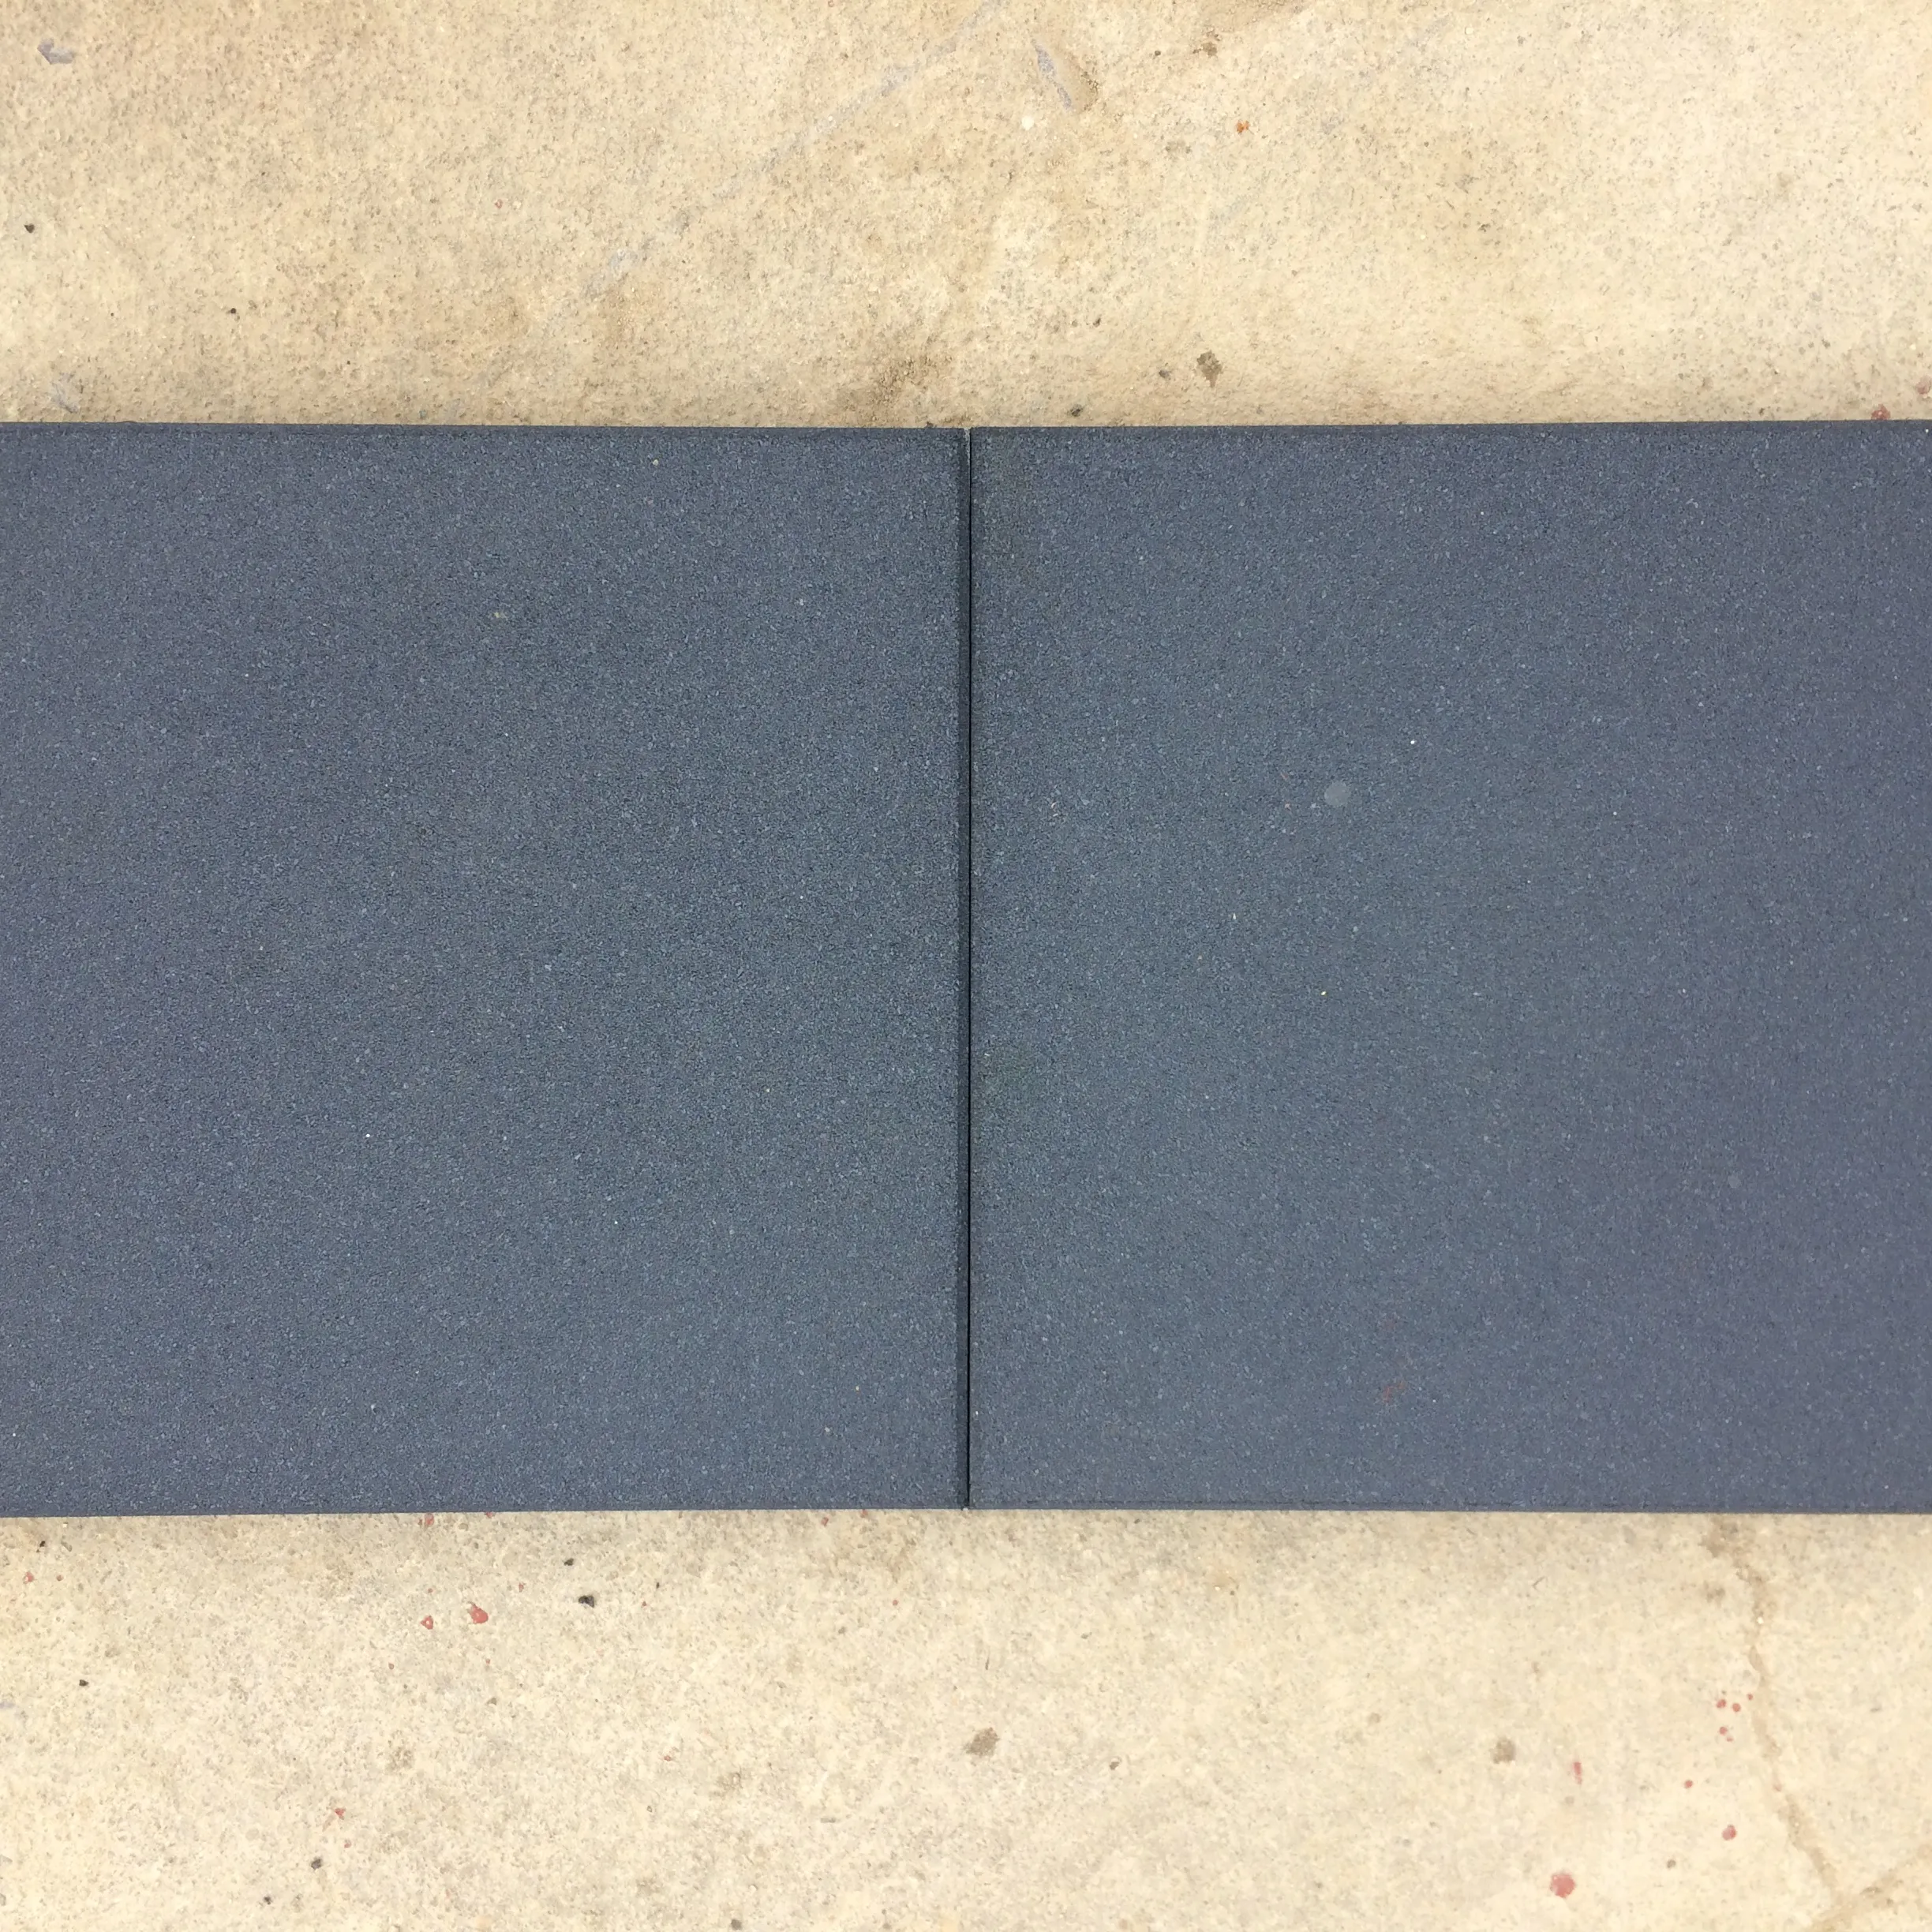 Grey Gym Rubber Flooring tiles /Sports Rubber Mat